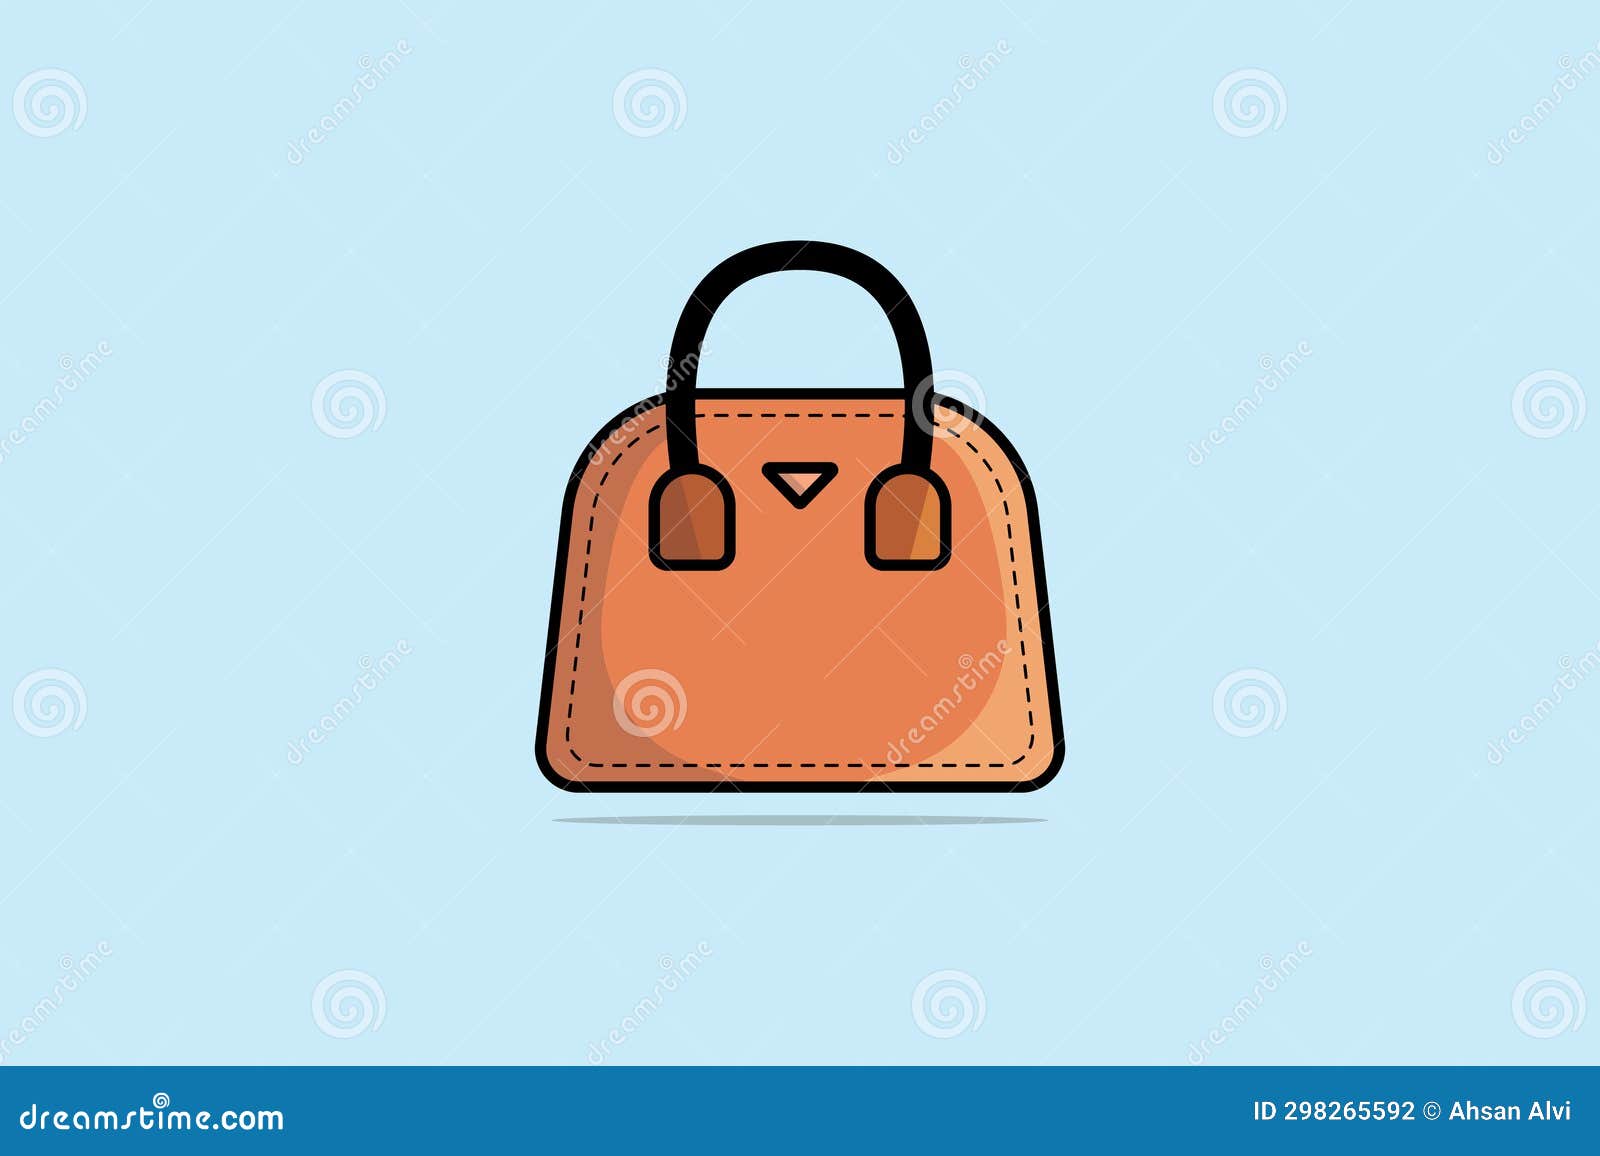 Cute Cat Design Handbags Trendy Pu Leather Crossbody Bag - Temu